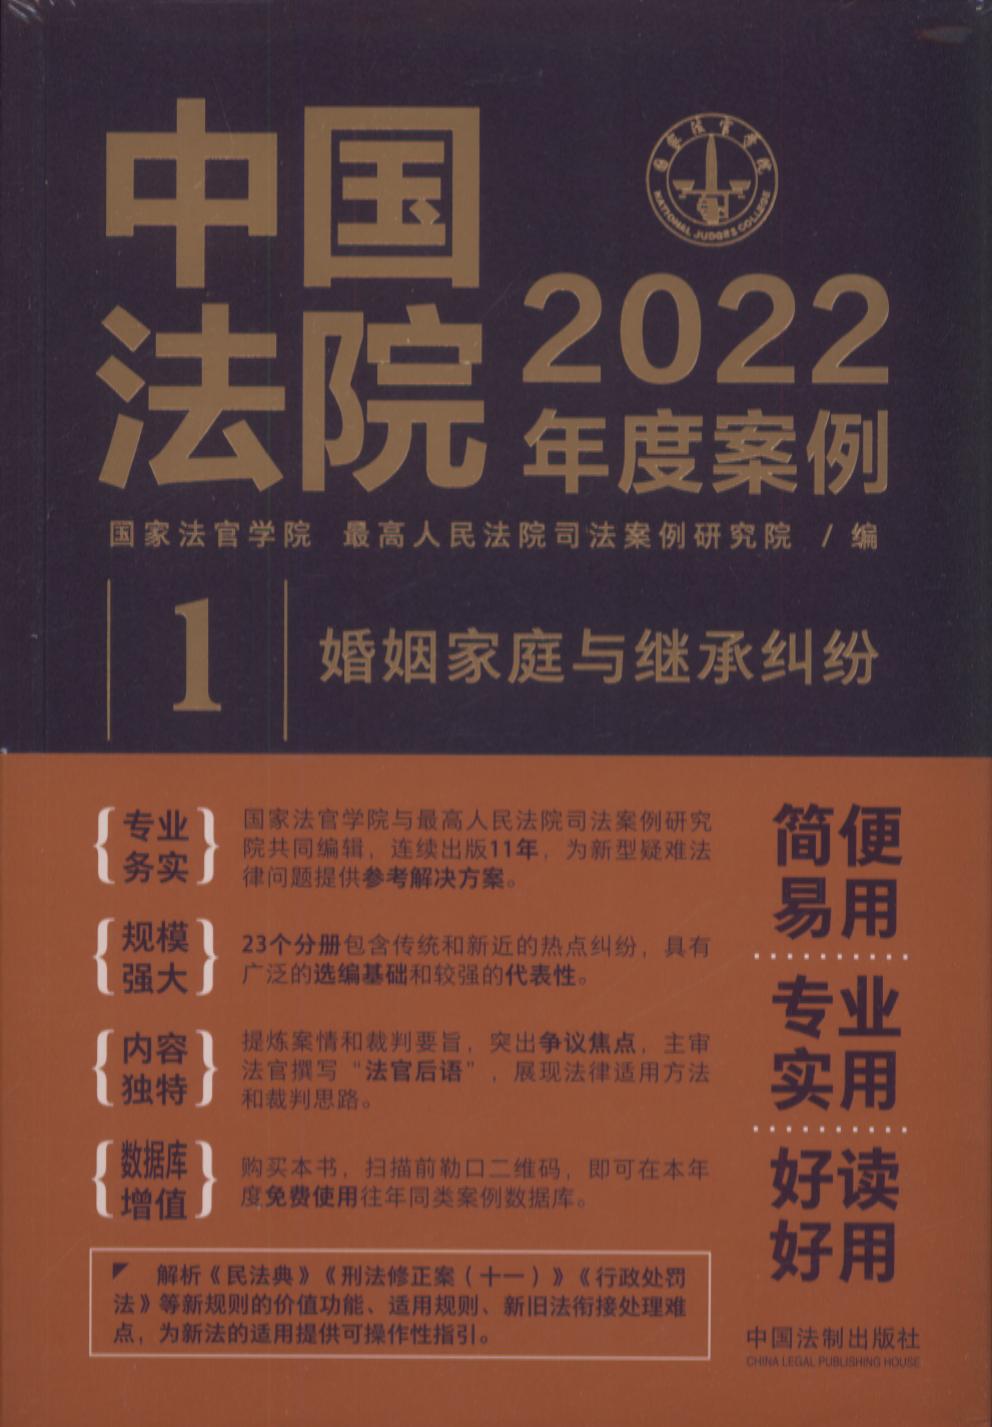 中国法院2022年度案例【1】婚姻家庭与继承纠纷